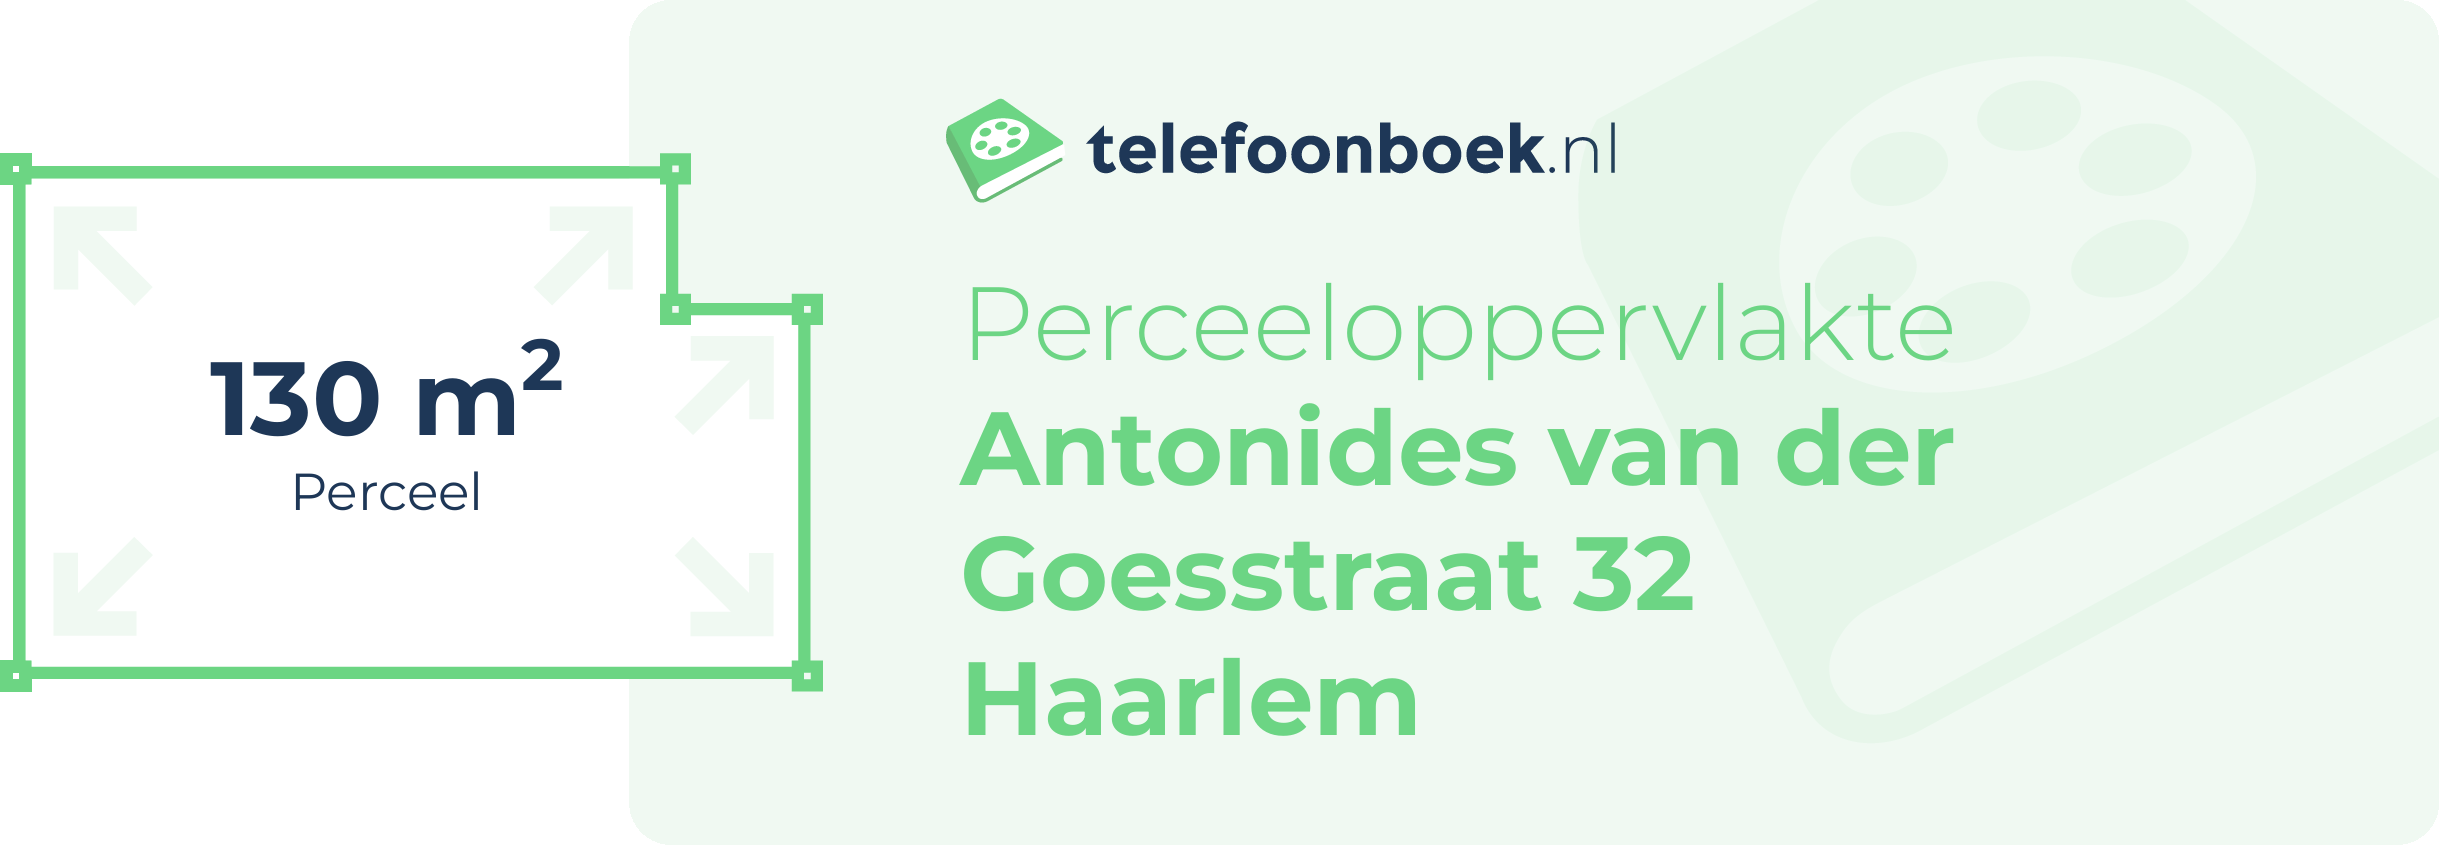 Perceeloppervlakte Antonides Van Der Goesstraat 32 Haarlem